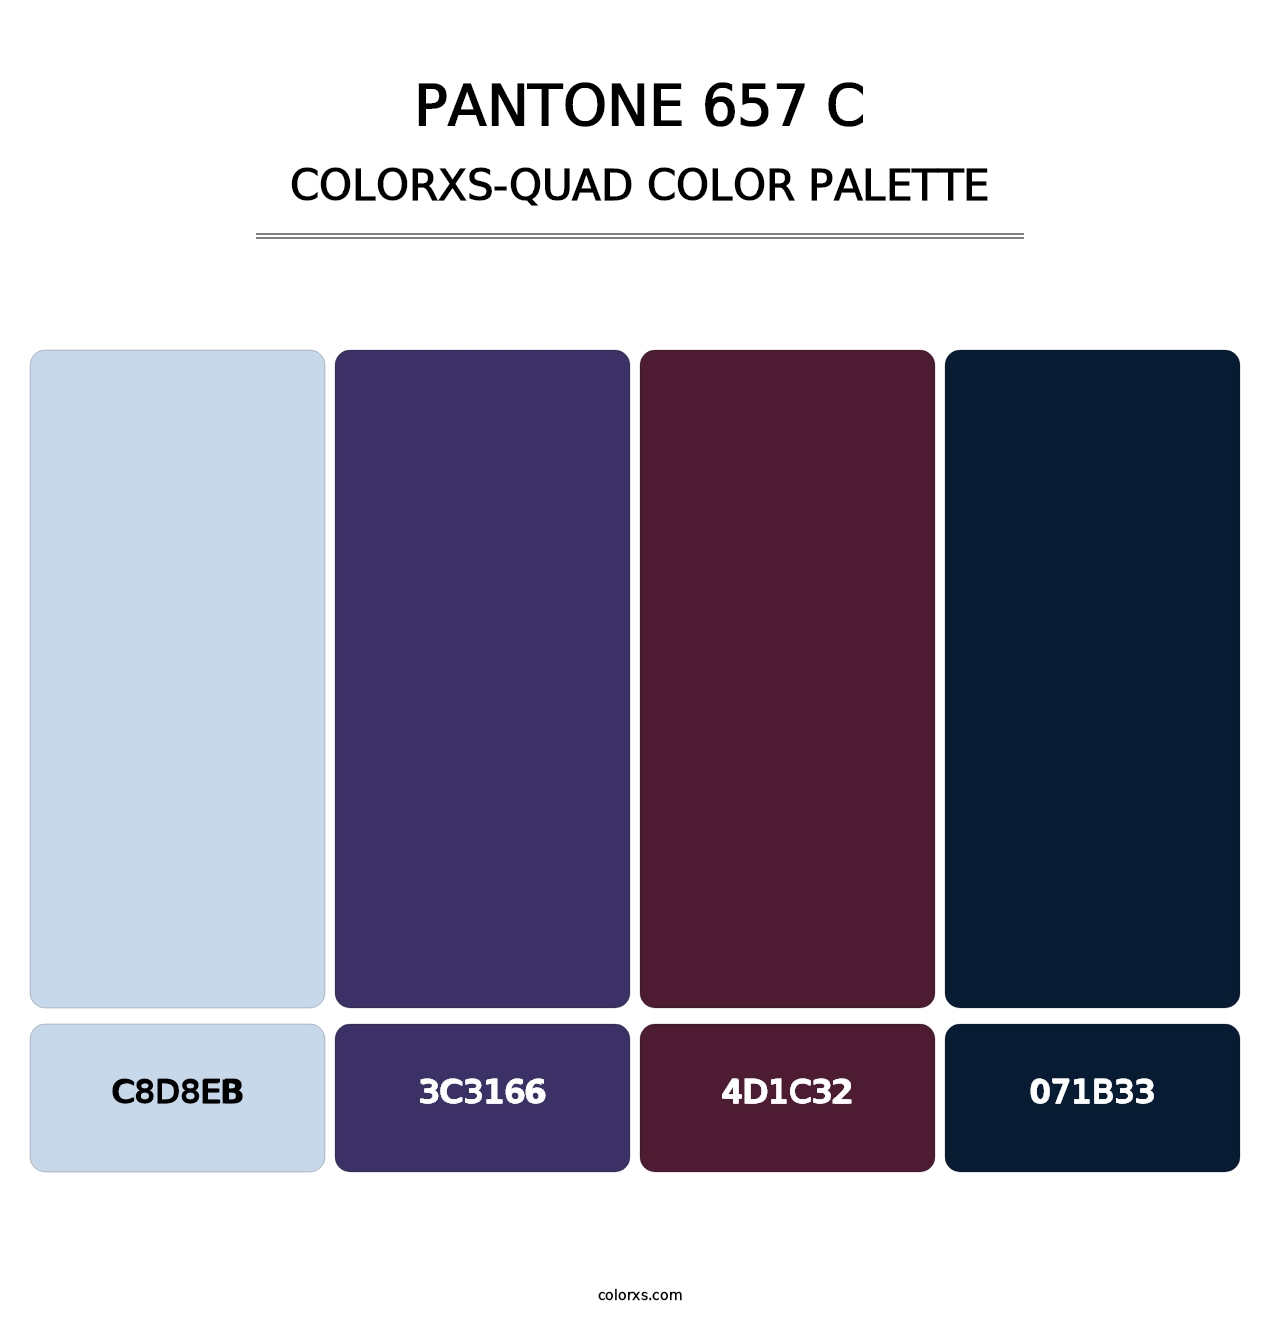 PANTONE 657 C - Colorxs Quad Palette